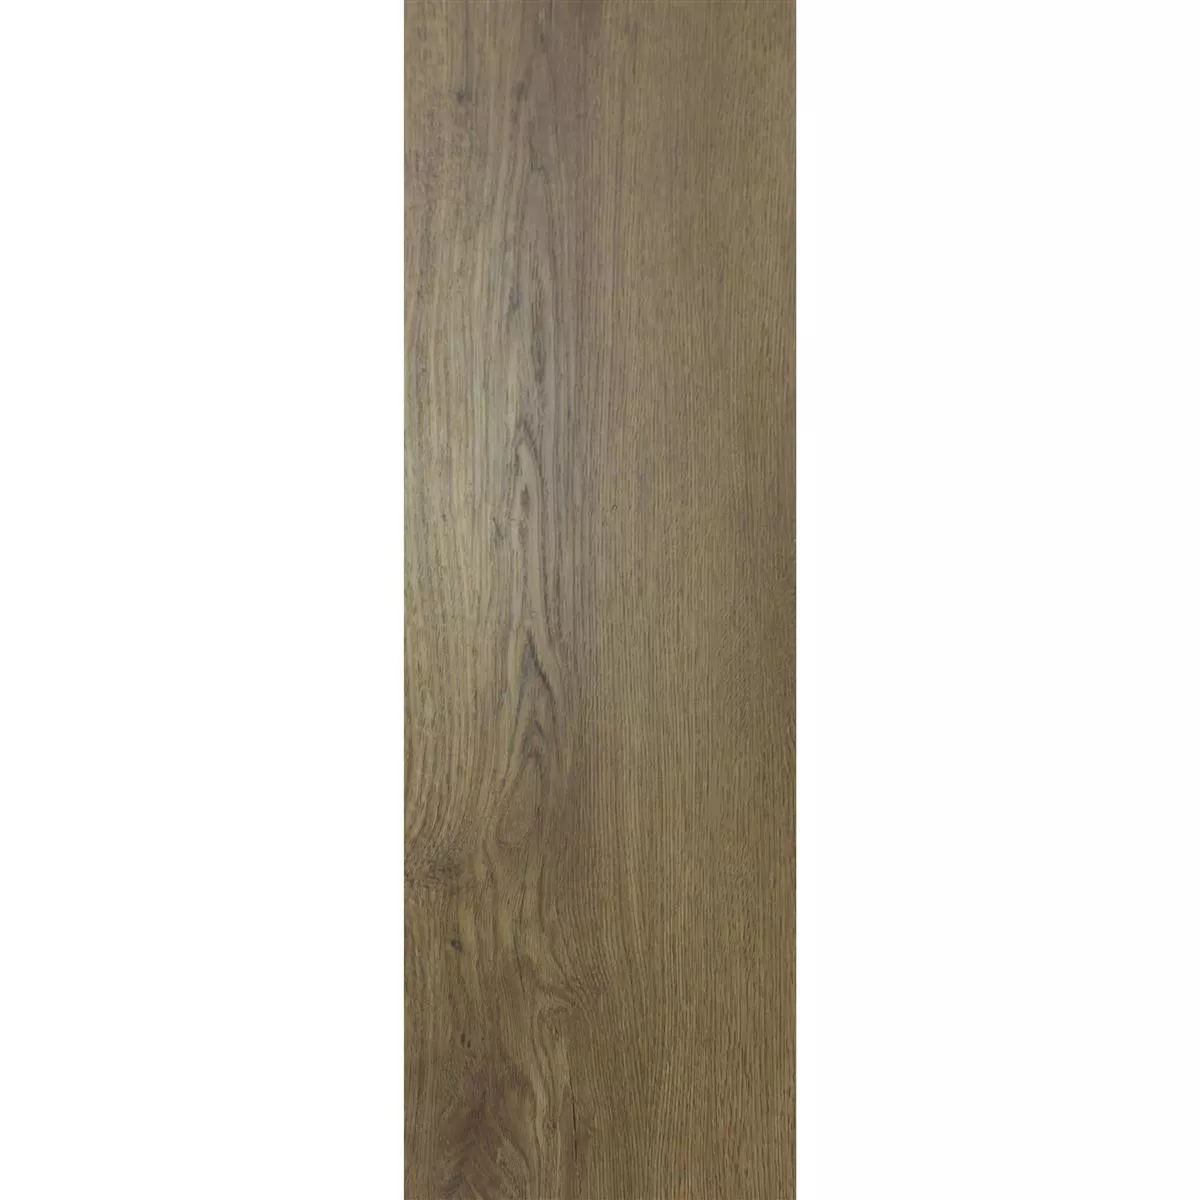 Vinylboden Klebevinyl Newcastle 23,2x122,7cm Ocker